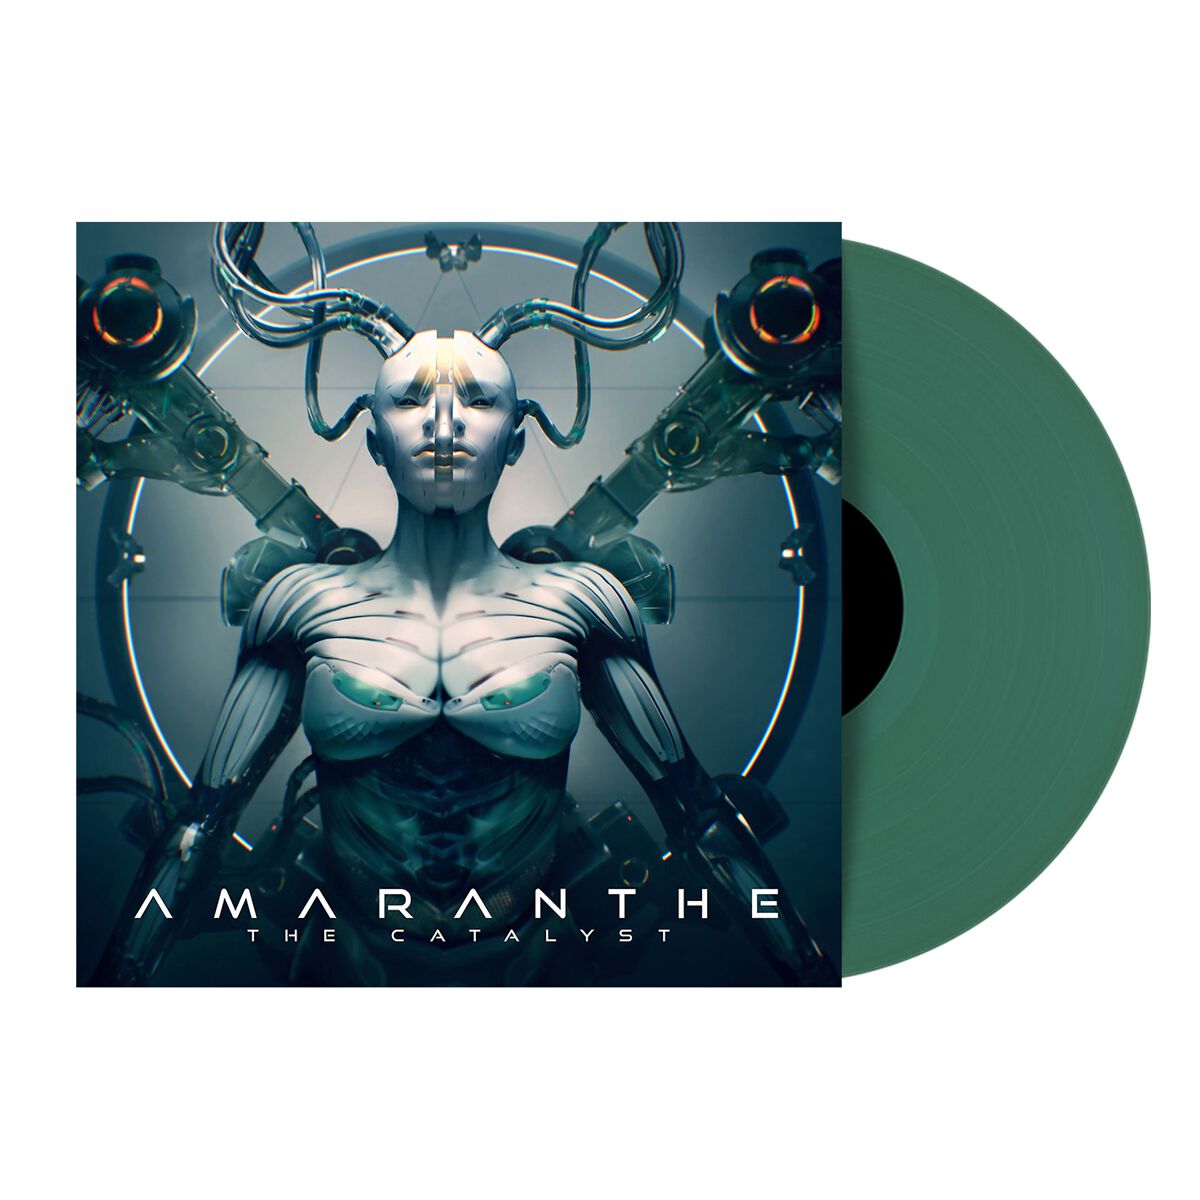 The Catalyst von Amaranthe - LP (Coloured, Limited Edition)